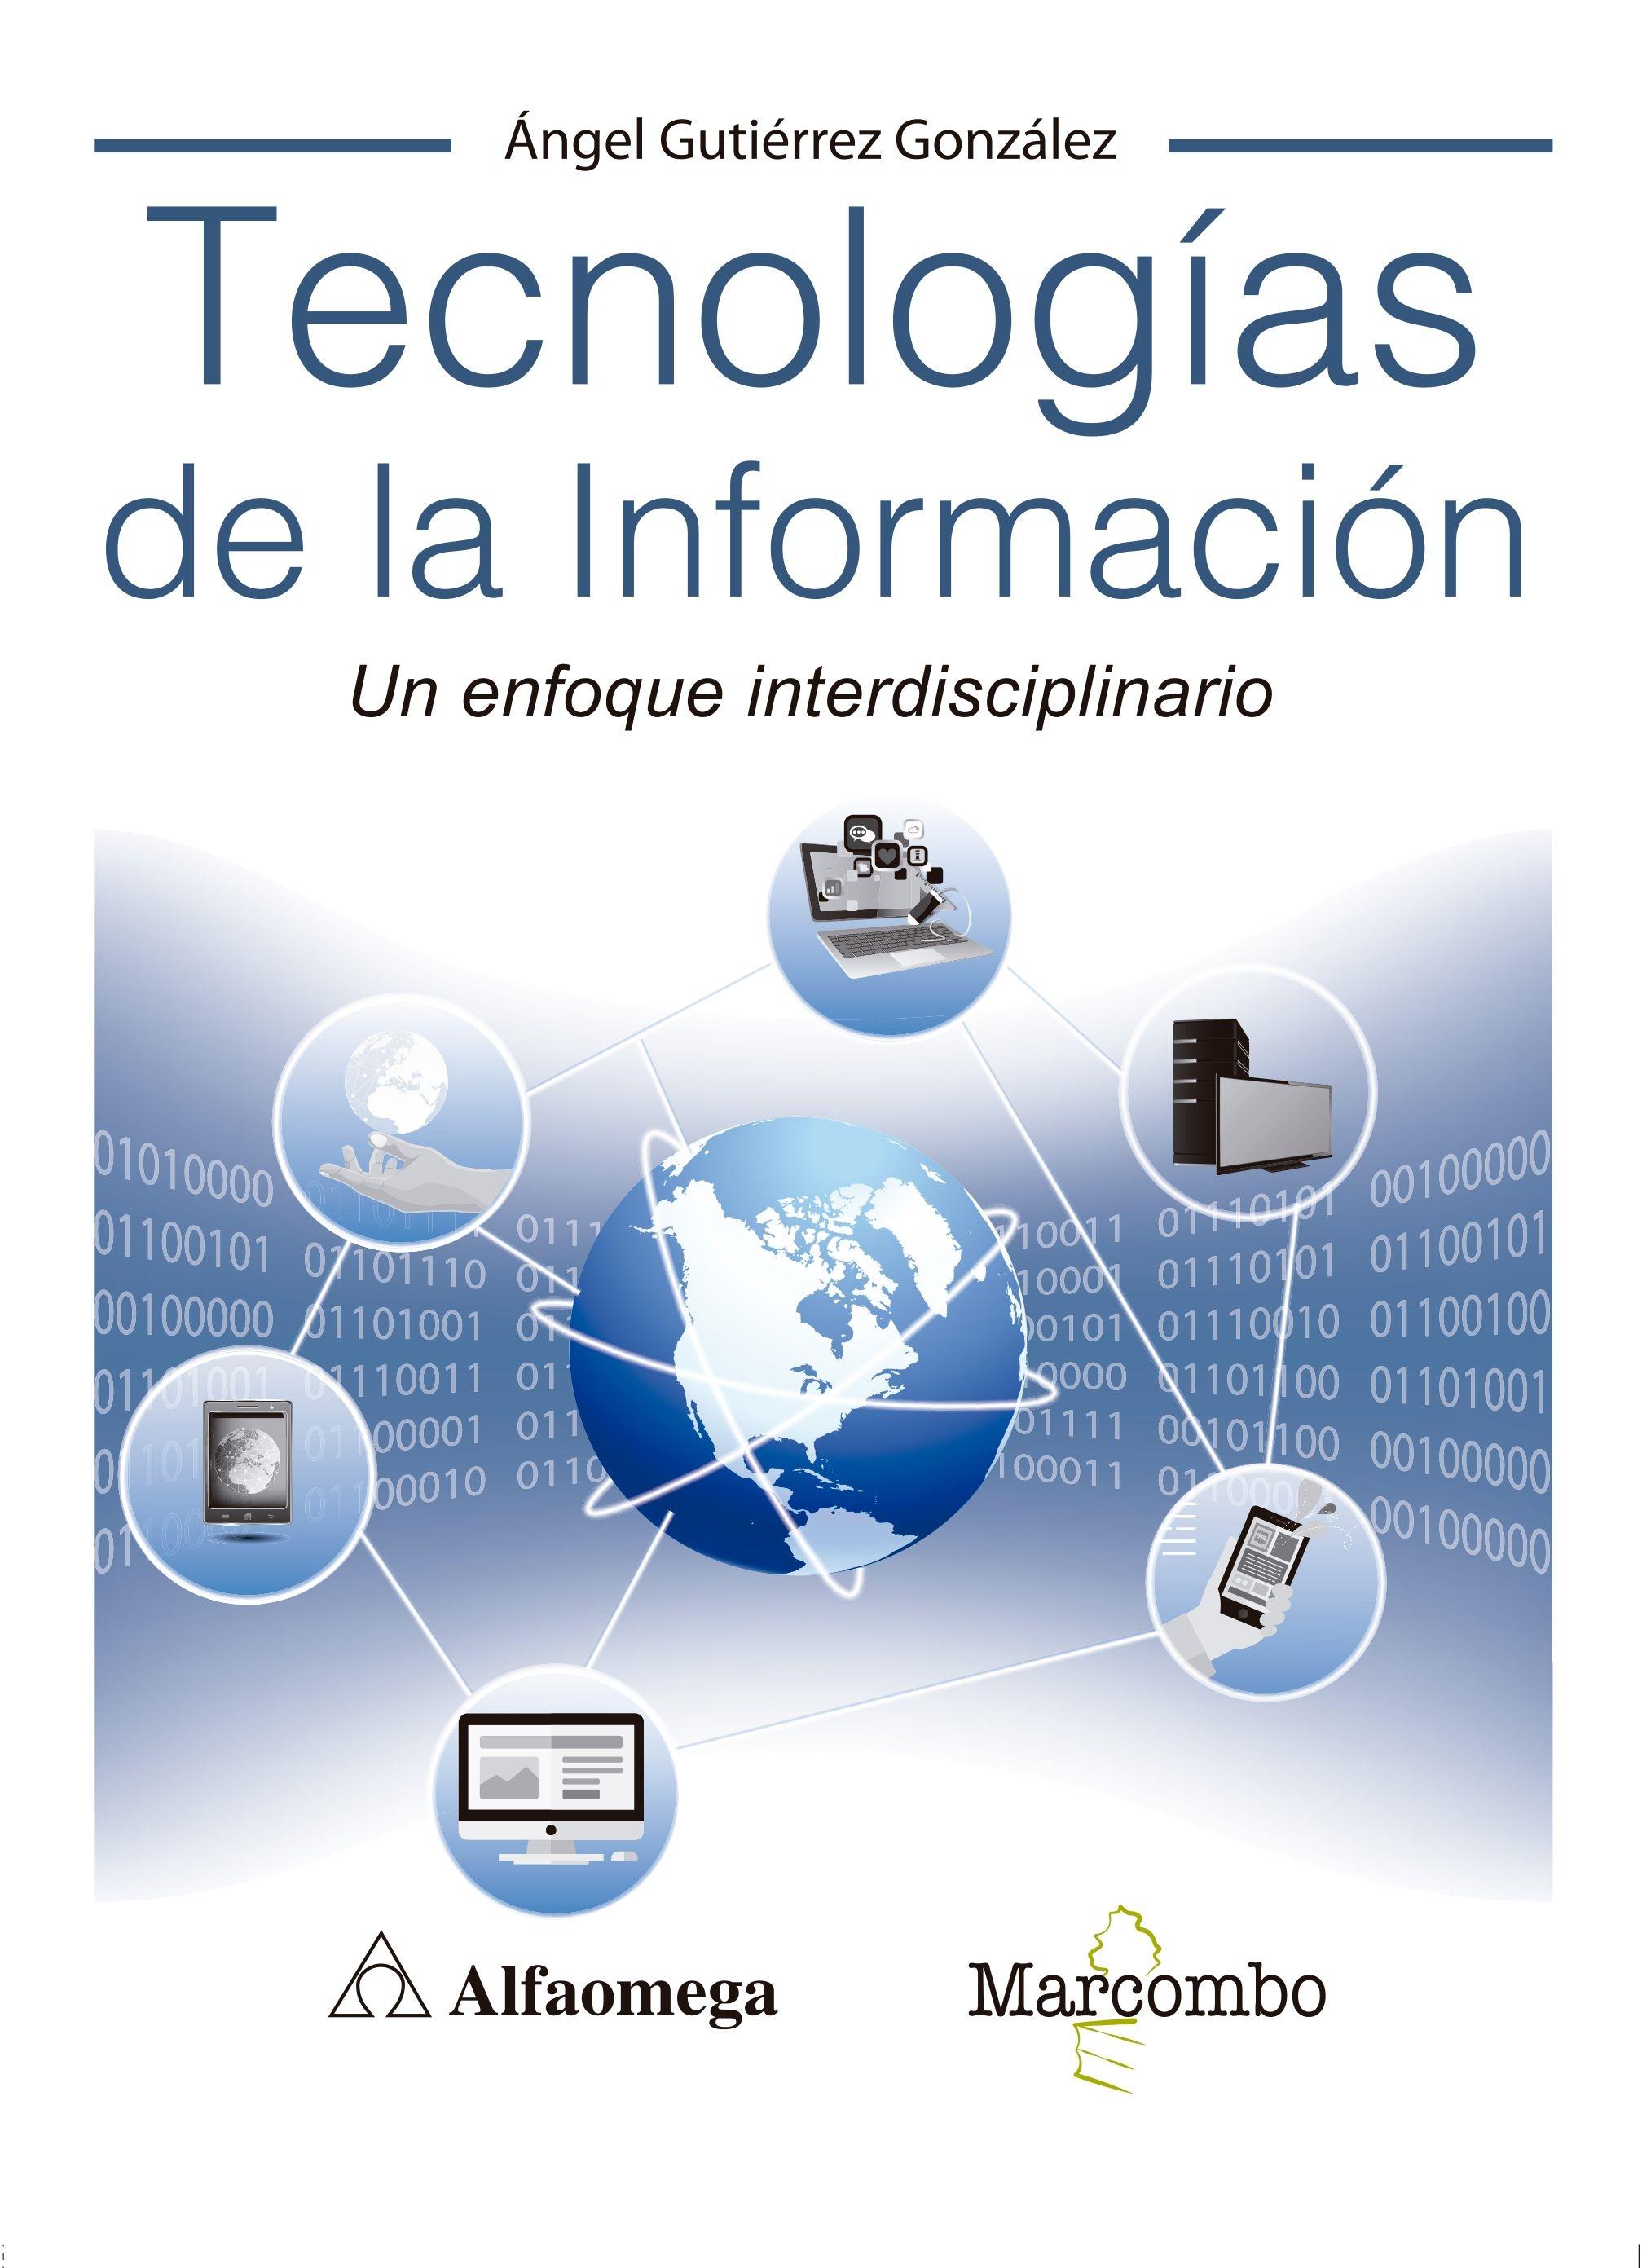 Tecnologías de la información "Un enfoque interdisciplinario"